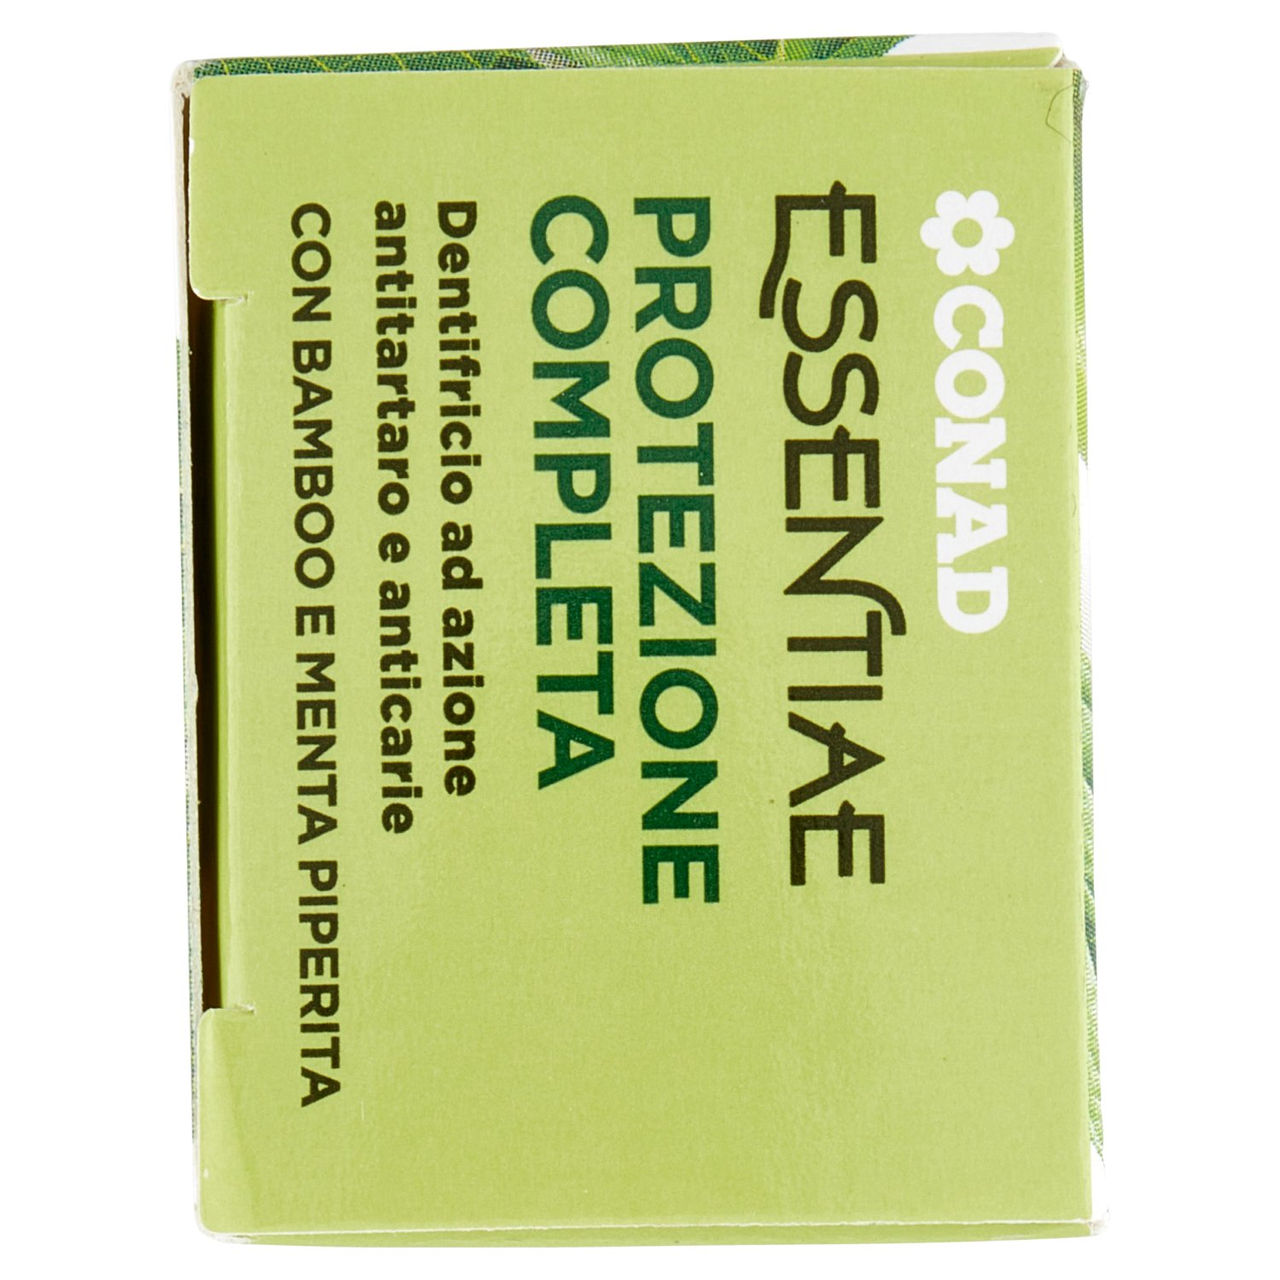 CONAD Essentiae Protezione Completa Dentifricio ad azione antitartaro e anticarie 75 ml